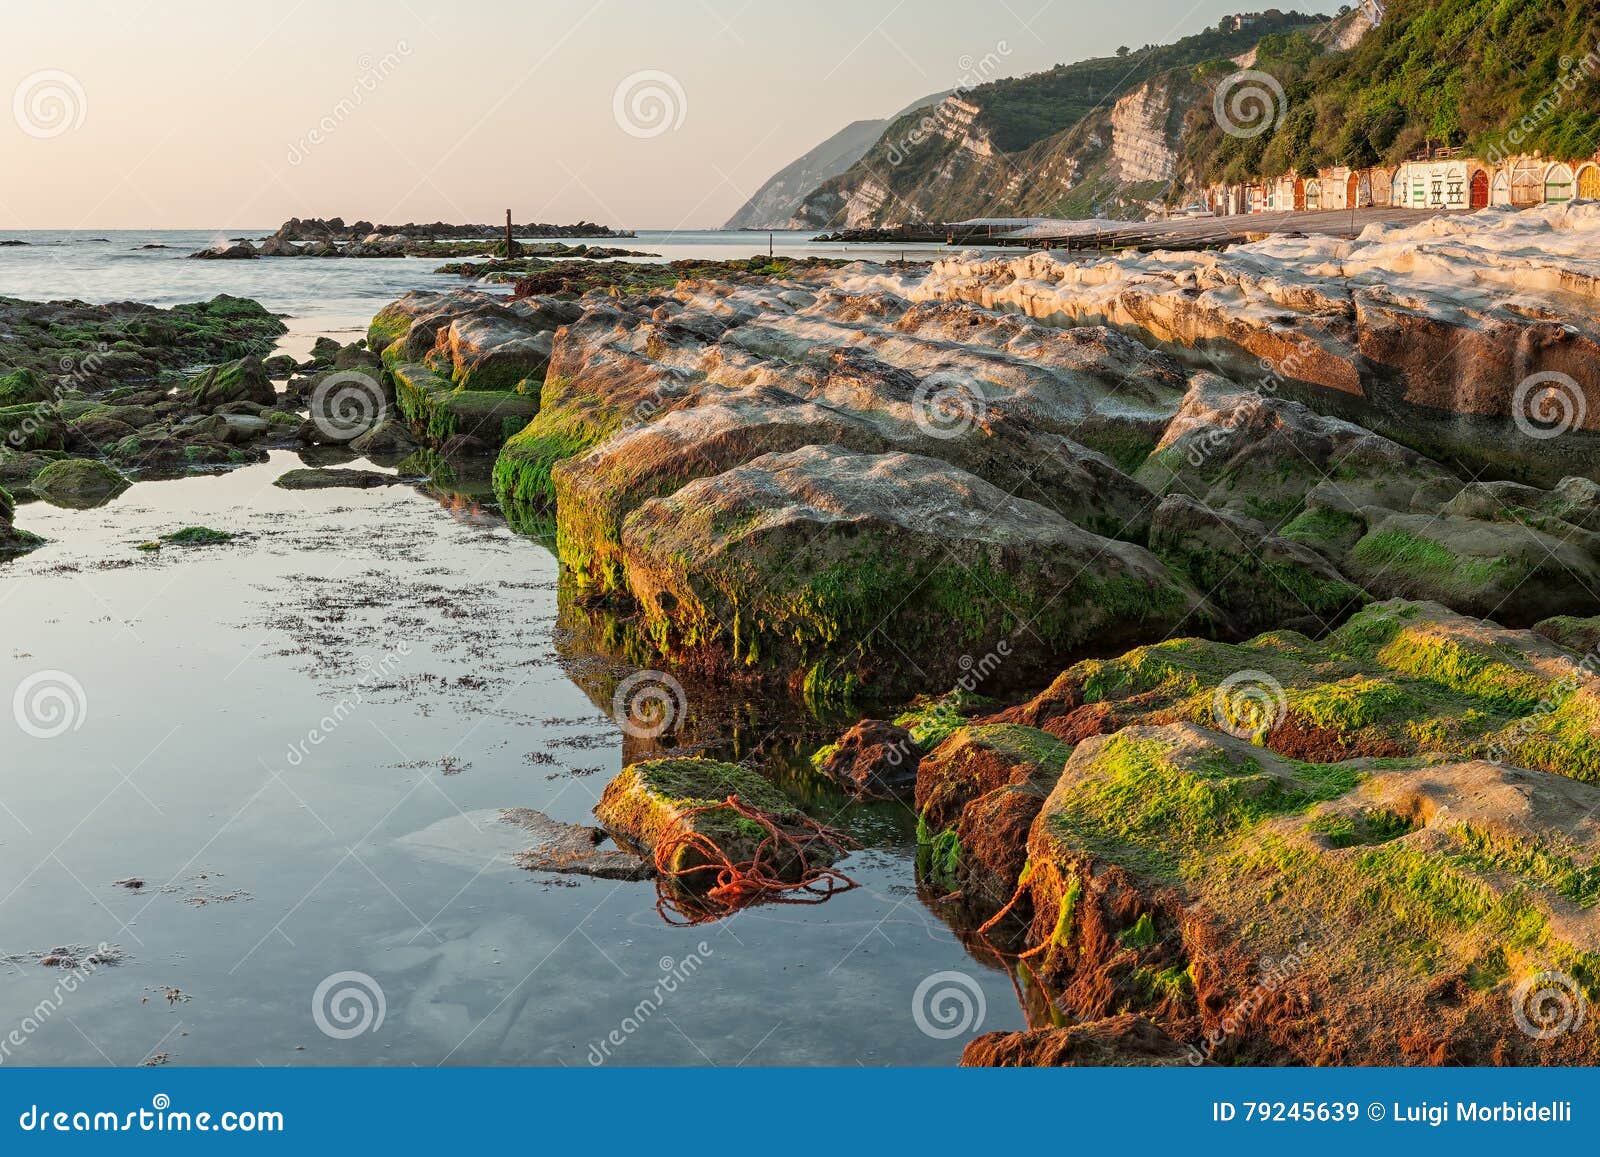 Passetto kołysa przy wschodem słońca, Ancona, Włochy. Passetto skały odbijali na wodzie przy wschodem słońca, Ancona, Włochy